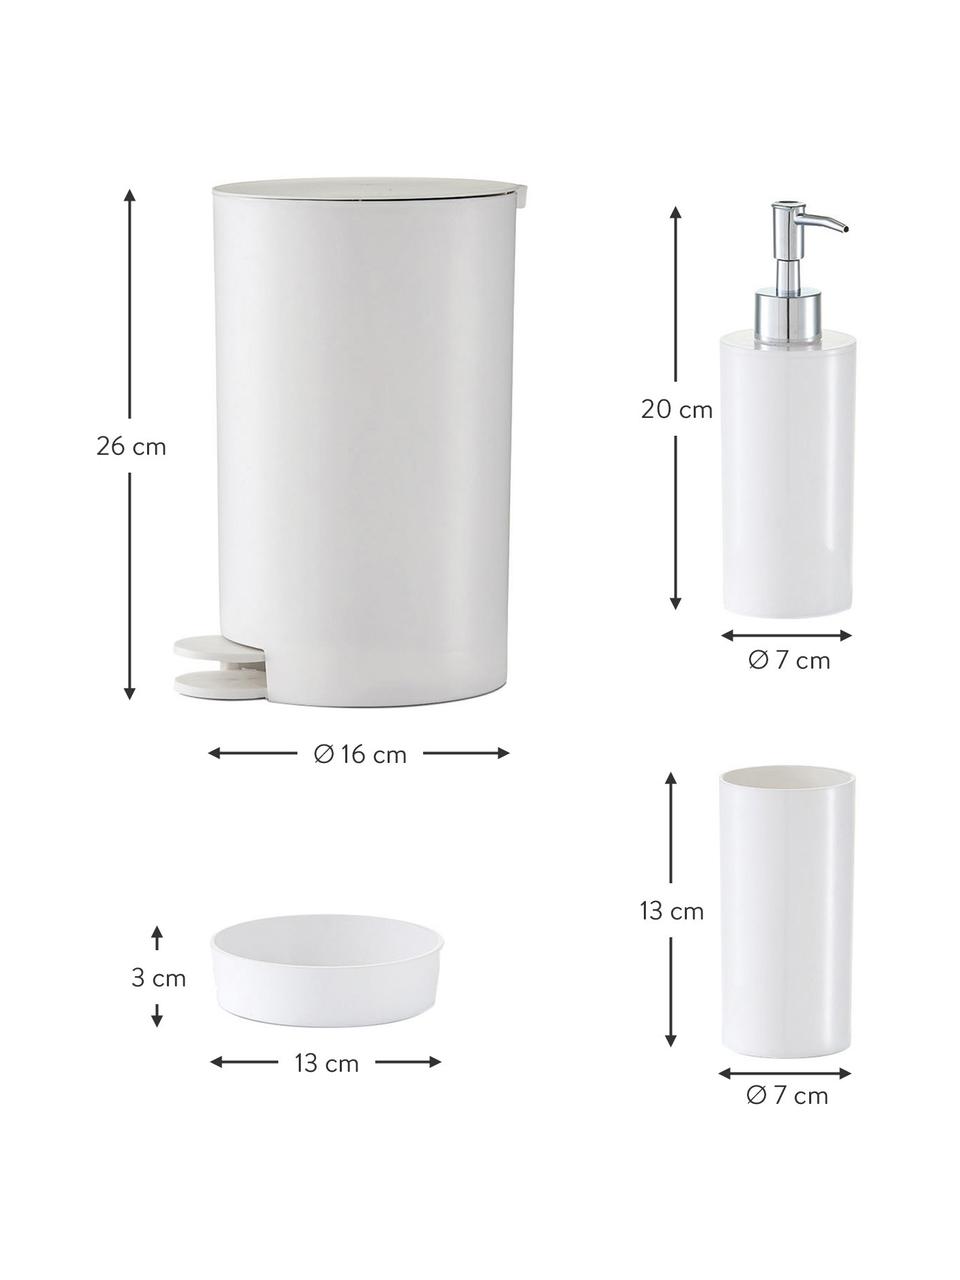 Set de accesorios de baño Nika, 4 pzas., Plástico, Blanco, Set de diferentes tamaños